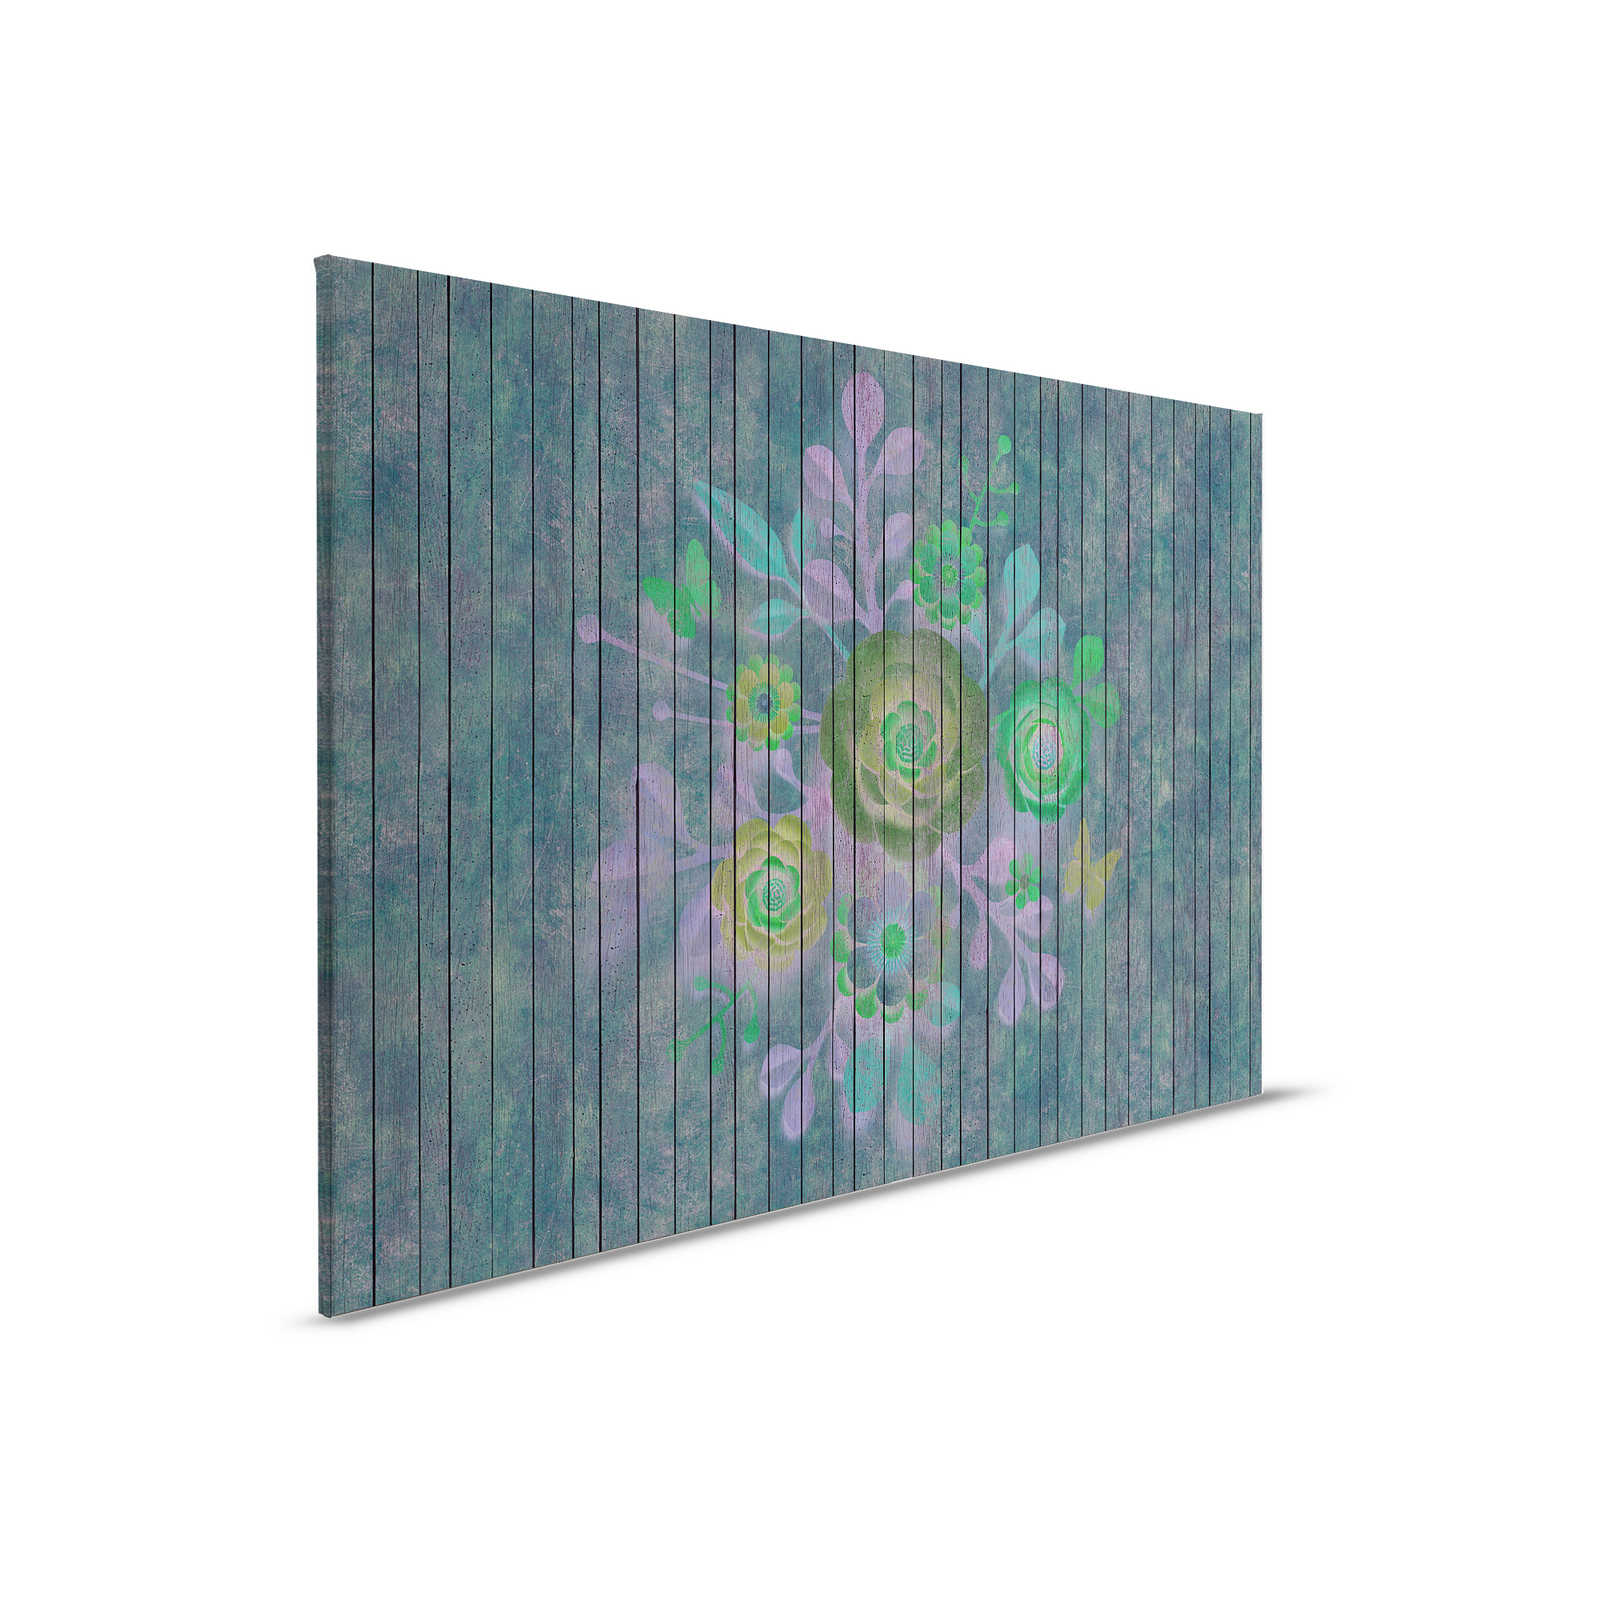 Spray bouquet 2 - toile en panneau de bois structure avec fleurs sur panneau - 0,90 m x 0,60 m
